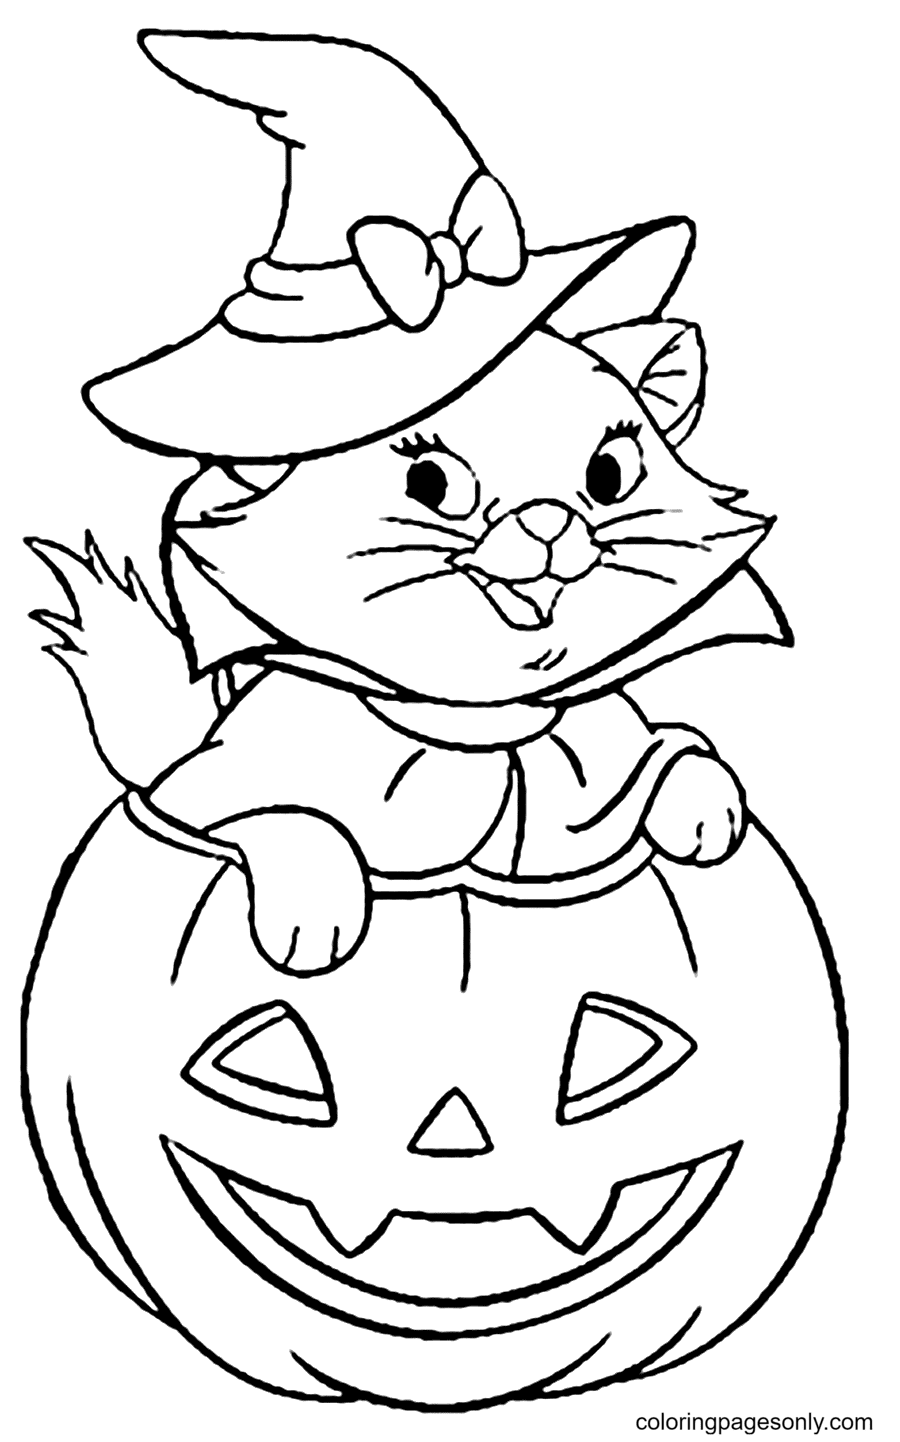 Página para colorir de gato de Halloween grátis